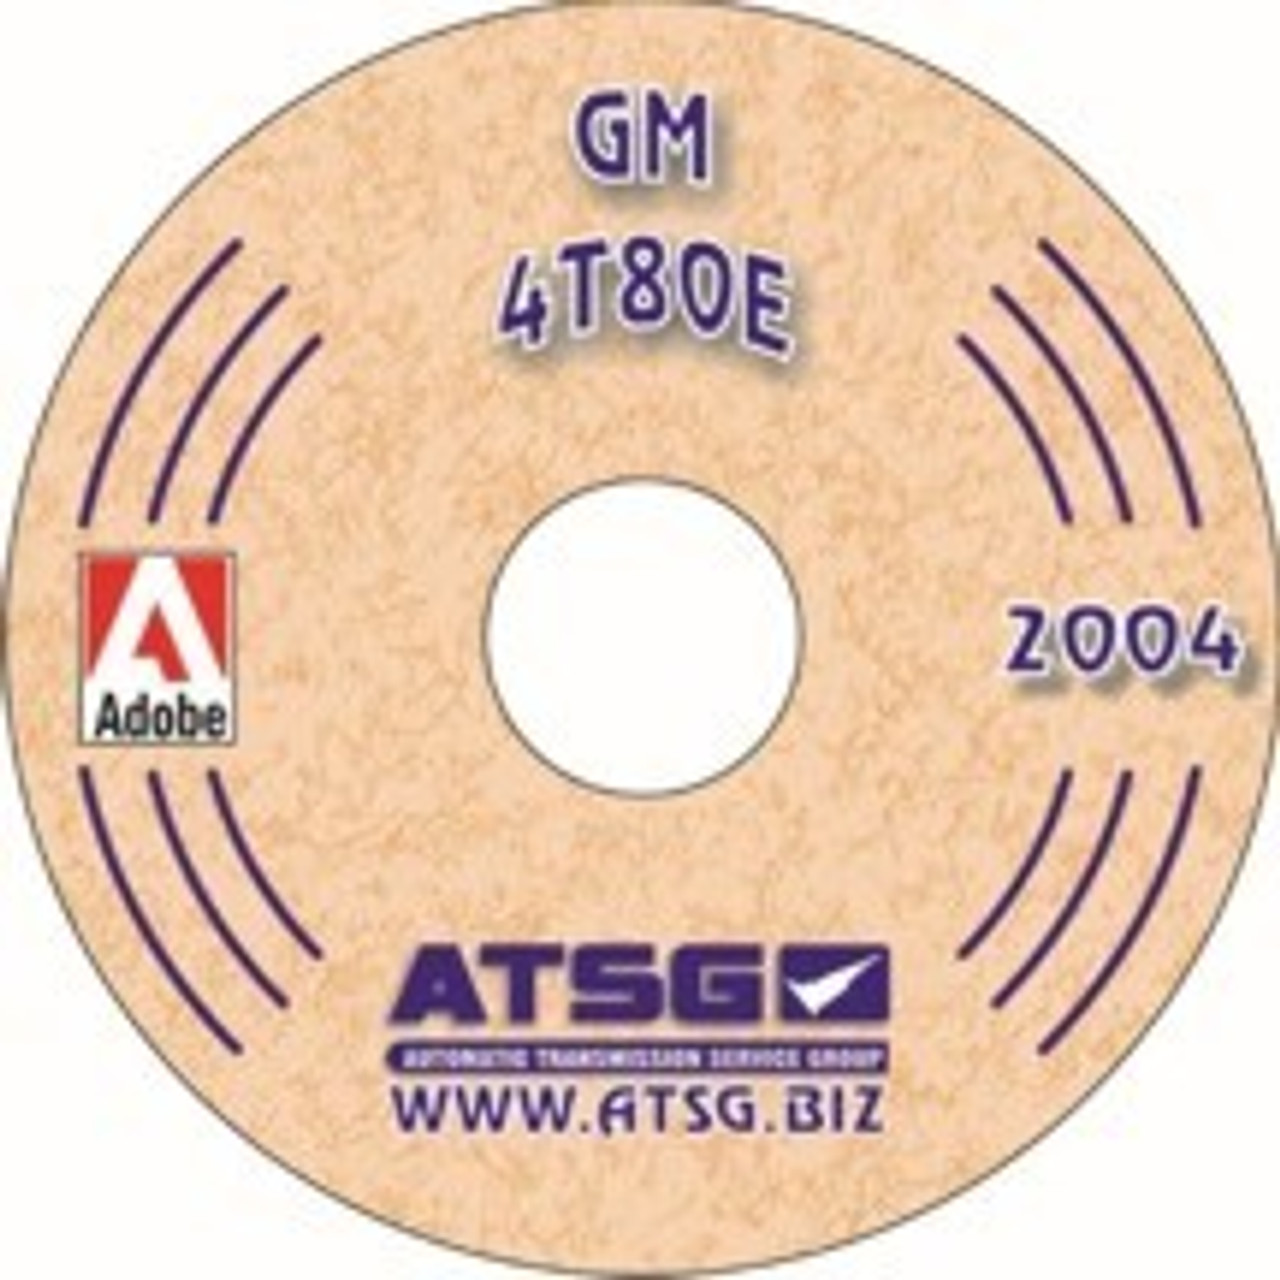 4T80E ATSG Tech Service Rebuild Manual - CD